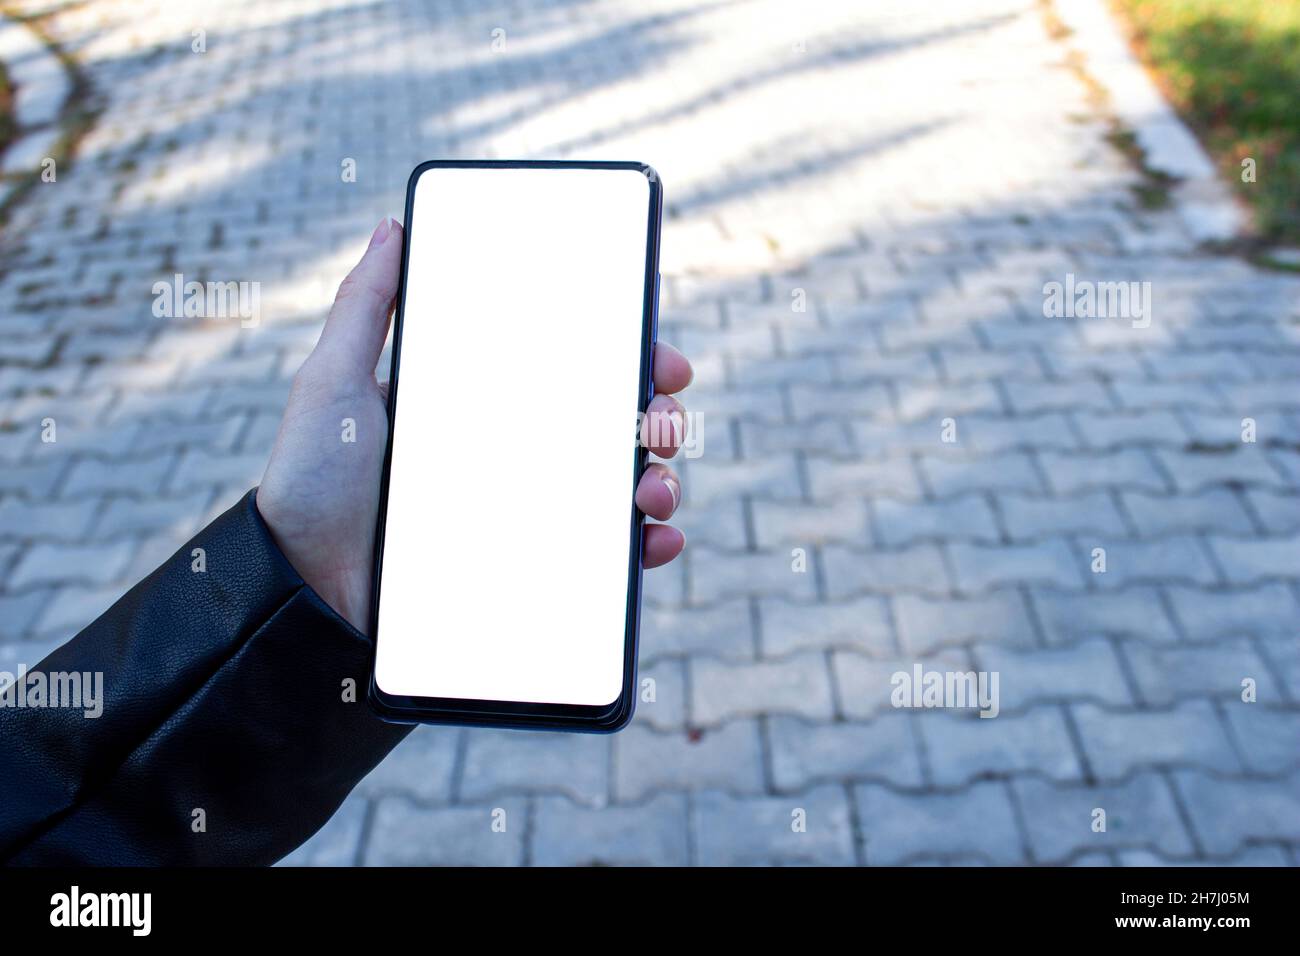 Immagine mockup di una mano donna che tiene il telefono cellulare con schermo bianco vuoto mentre si cammina sul marciapiede. Foto Stock